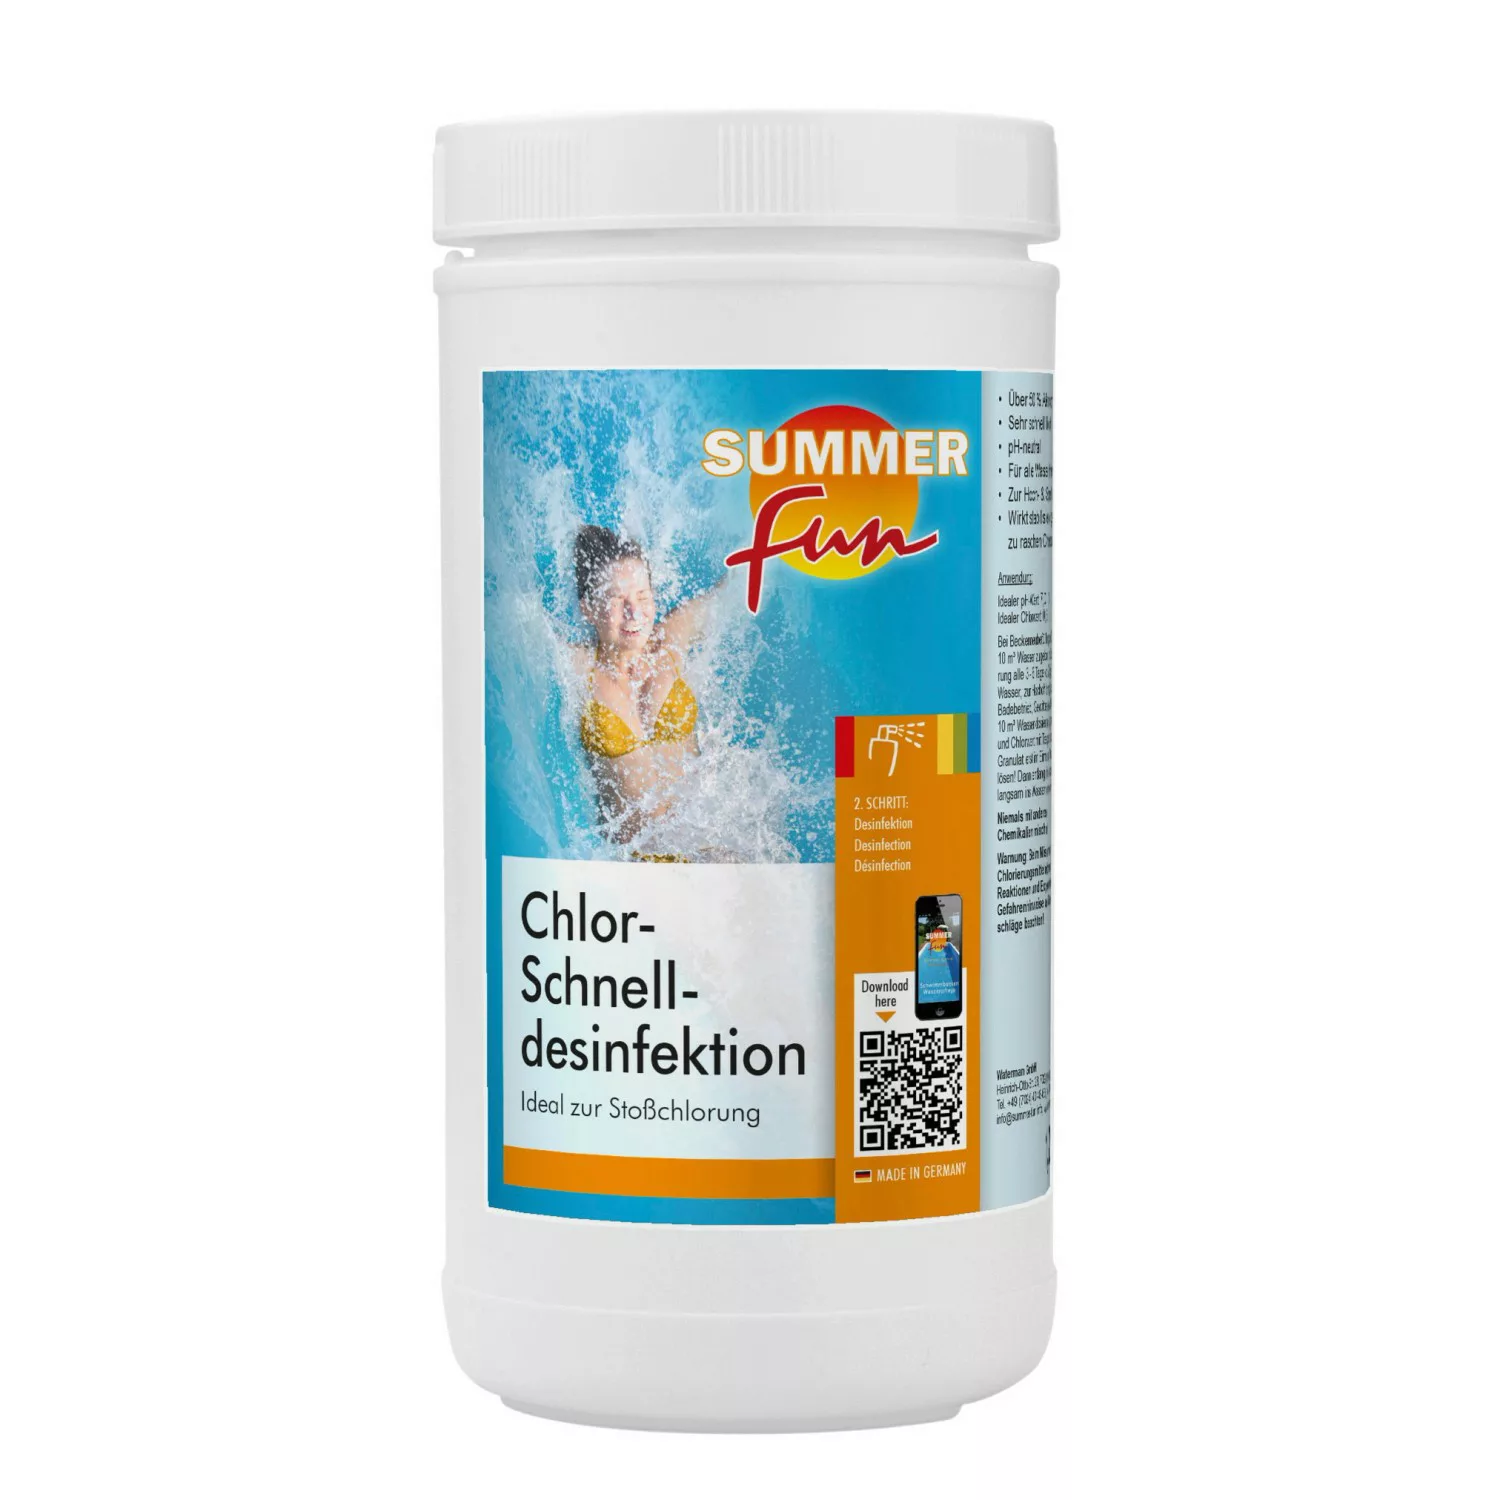 Summer Fun Chlor-Schnell-Desinfektion 1,2 kg für Stoßchlorungen günstig online kaufen